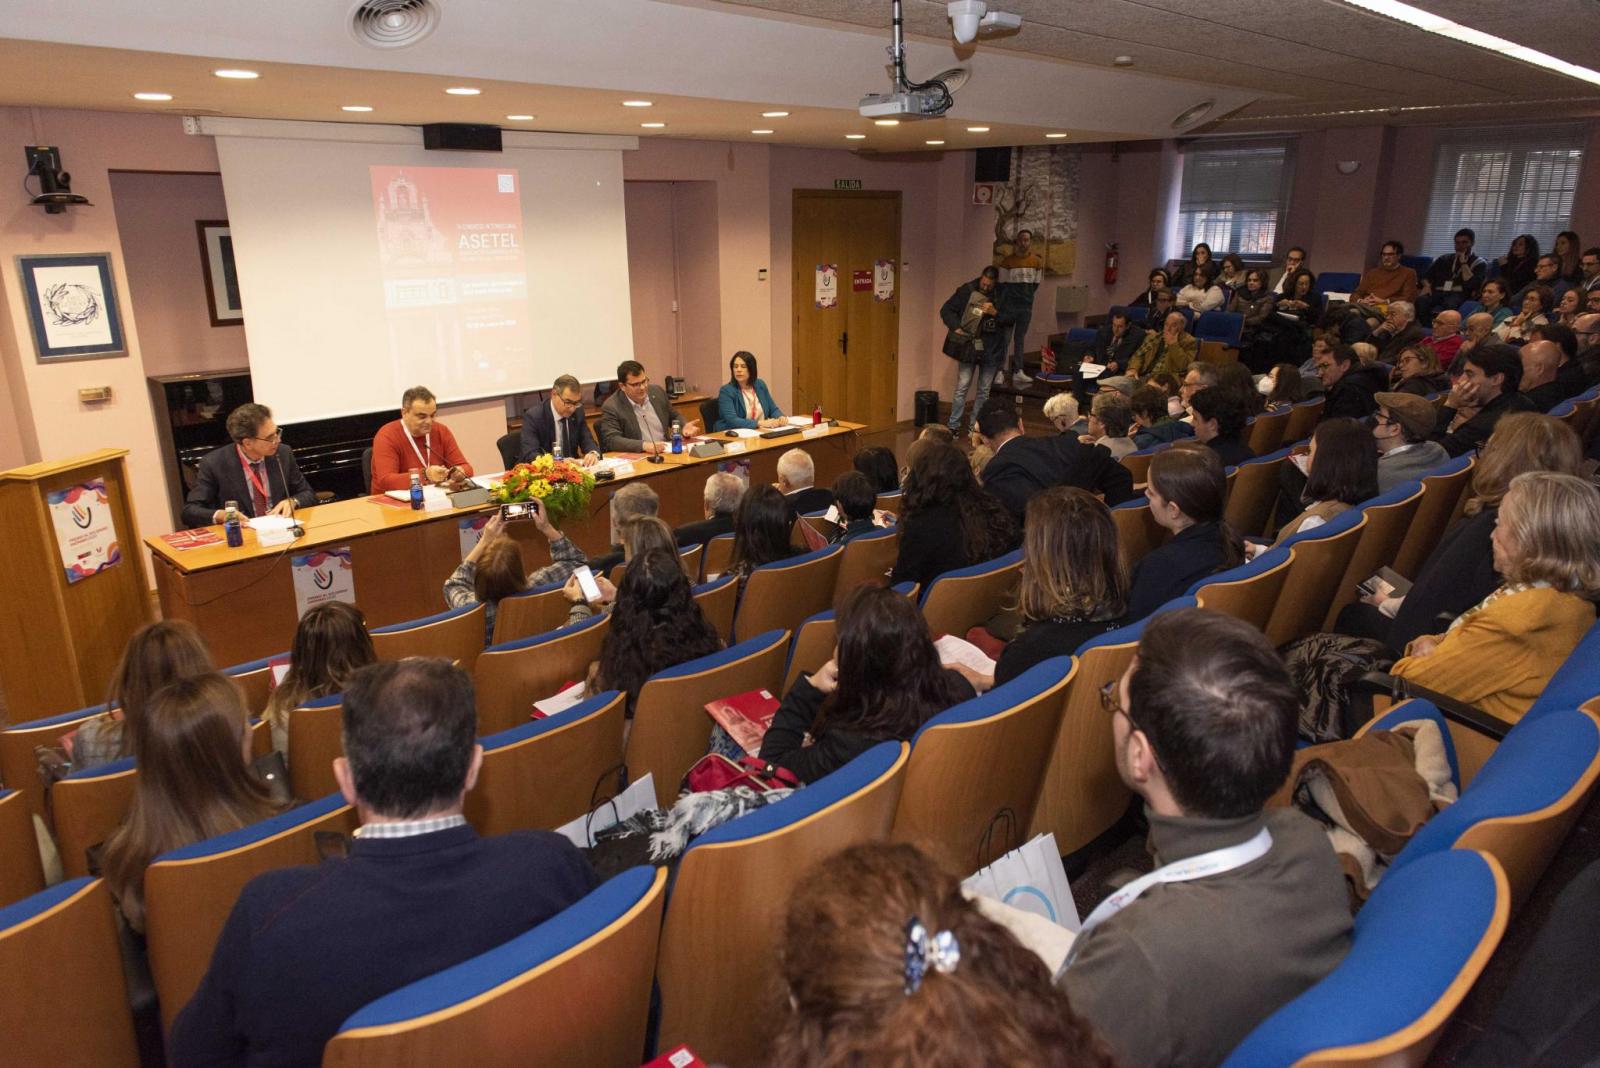 El académico Nuccio Ordine participa en un congreso en la UMU